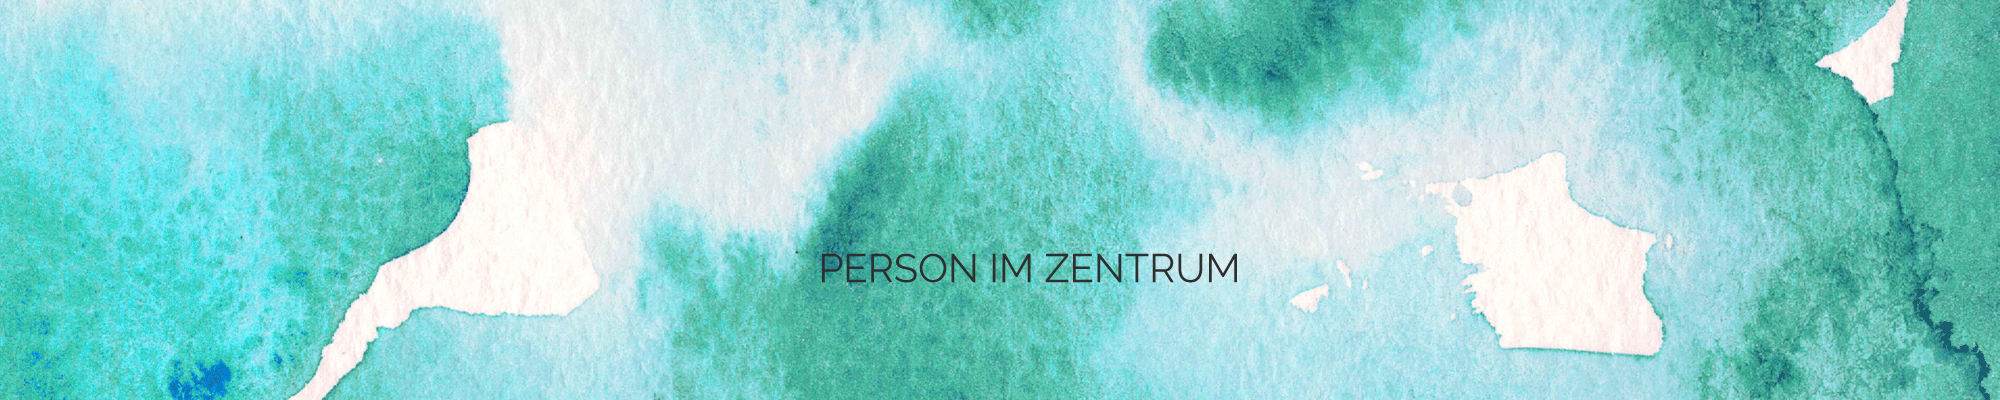 (c) Person-im-zentrum.at